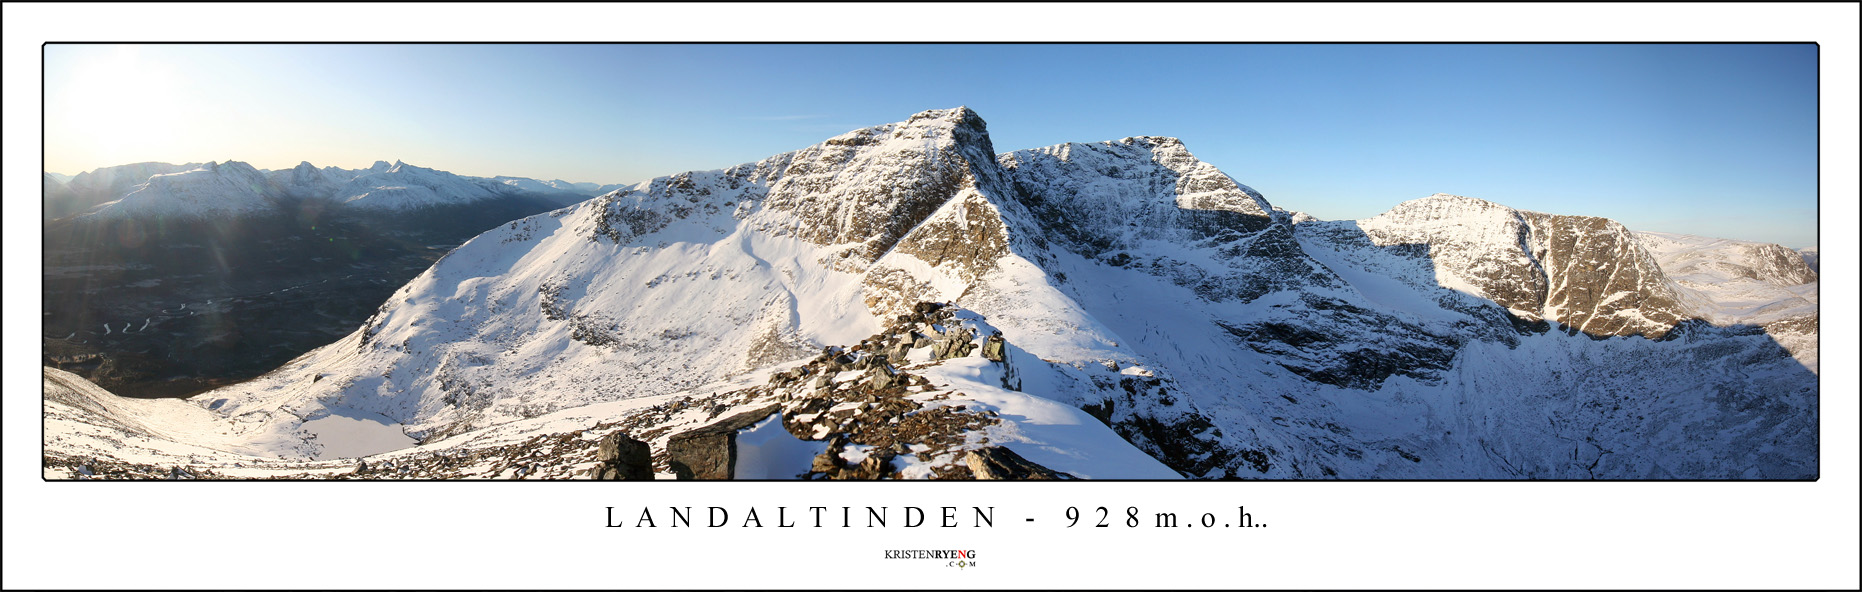 Panorama-Langdaltinden1.jpg - Utsikt fra Langdaltinden (928 moh). Her mot Finnheimfjellet.